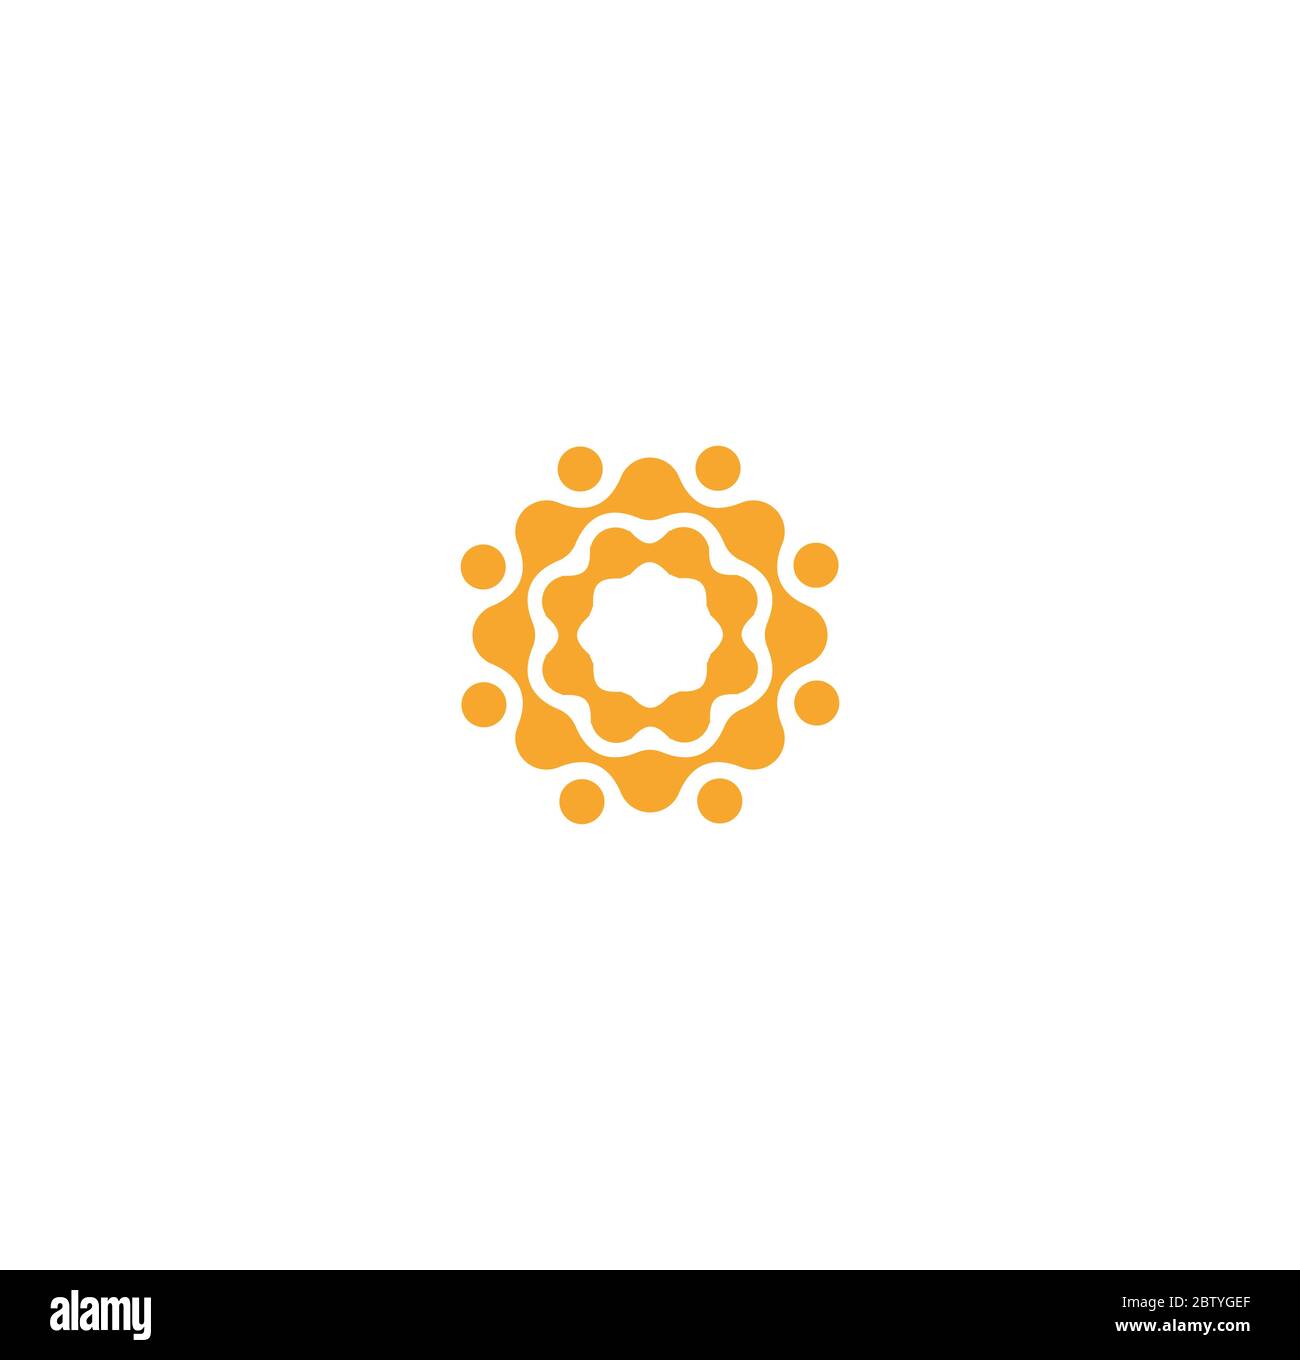 Connection Circles Logo Vorlage, abstrakt orange Sonne Symbol. Flaches minimales gepunktetes Emblem. Konzept Logo Design für Unternehmen und Start-up. Stock Vektor